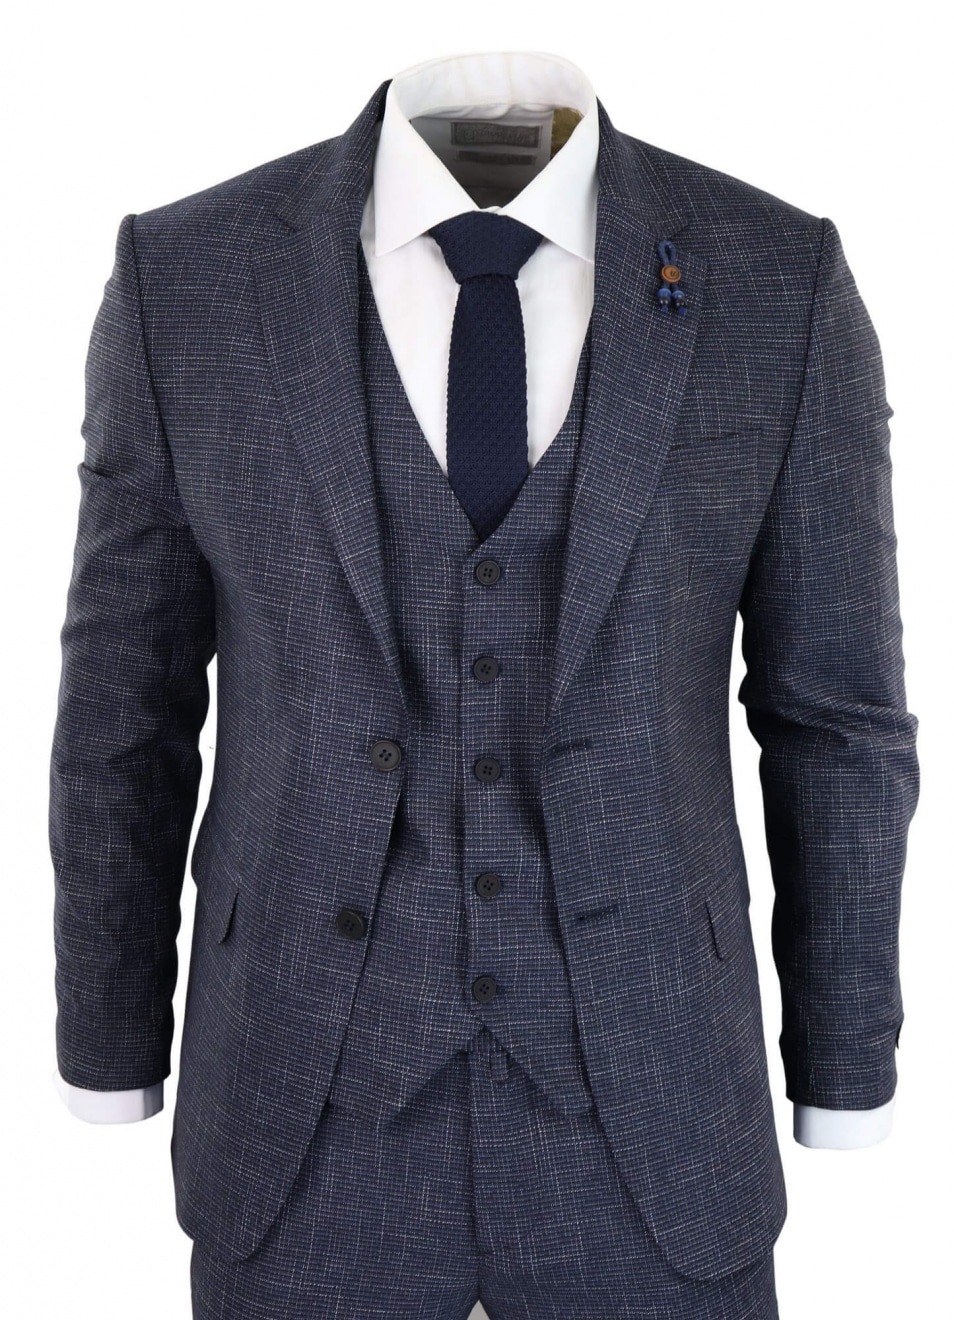 Navy-Blue Graph Check 3 Piece Suit - RK20-02: Buy Online - Happy Gentleman